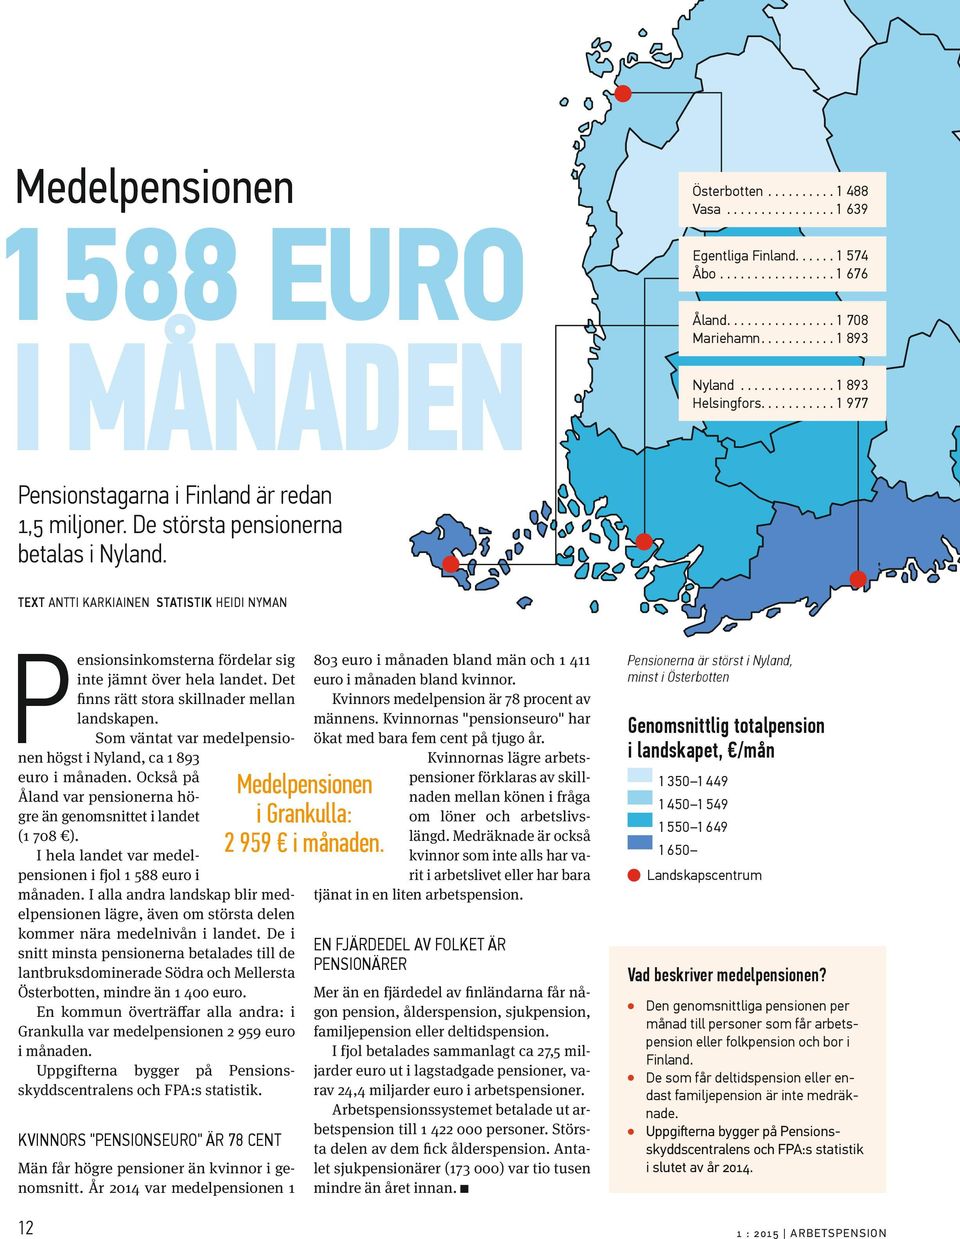 Det finns rätt stora skillnader mellan landskapen. Som väntat var medelpensionen högst i Nyland, ca 1 893 euro i månaden. Också på Åland var pensionerna högre än genomsnittet i landet (1 708 ).